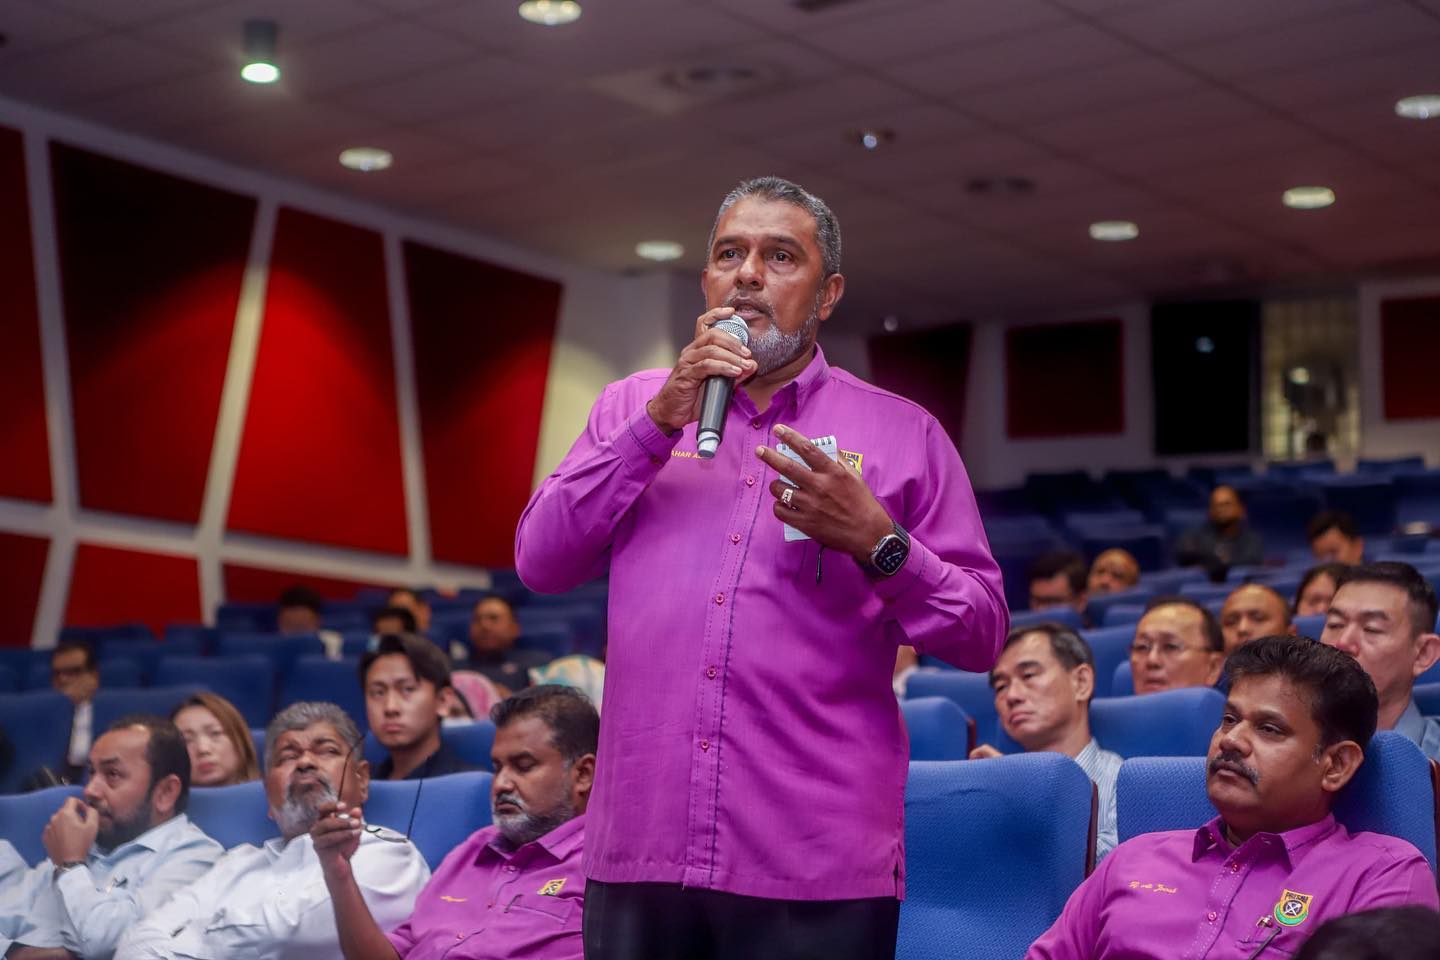 Datuk jawahar ali taib khan giving speech at an event